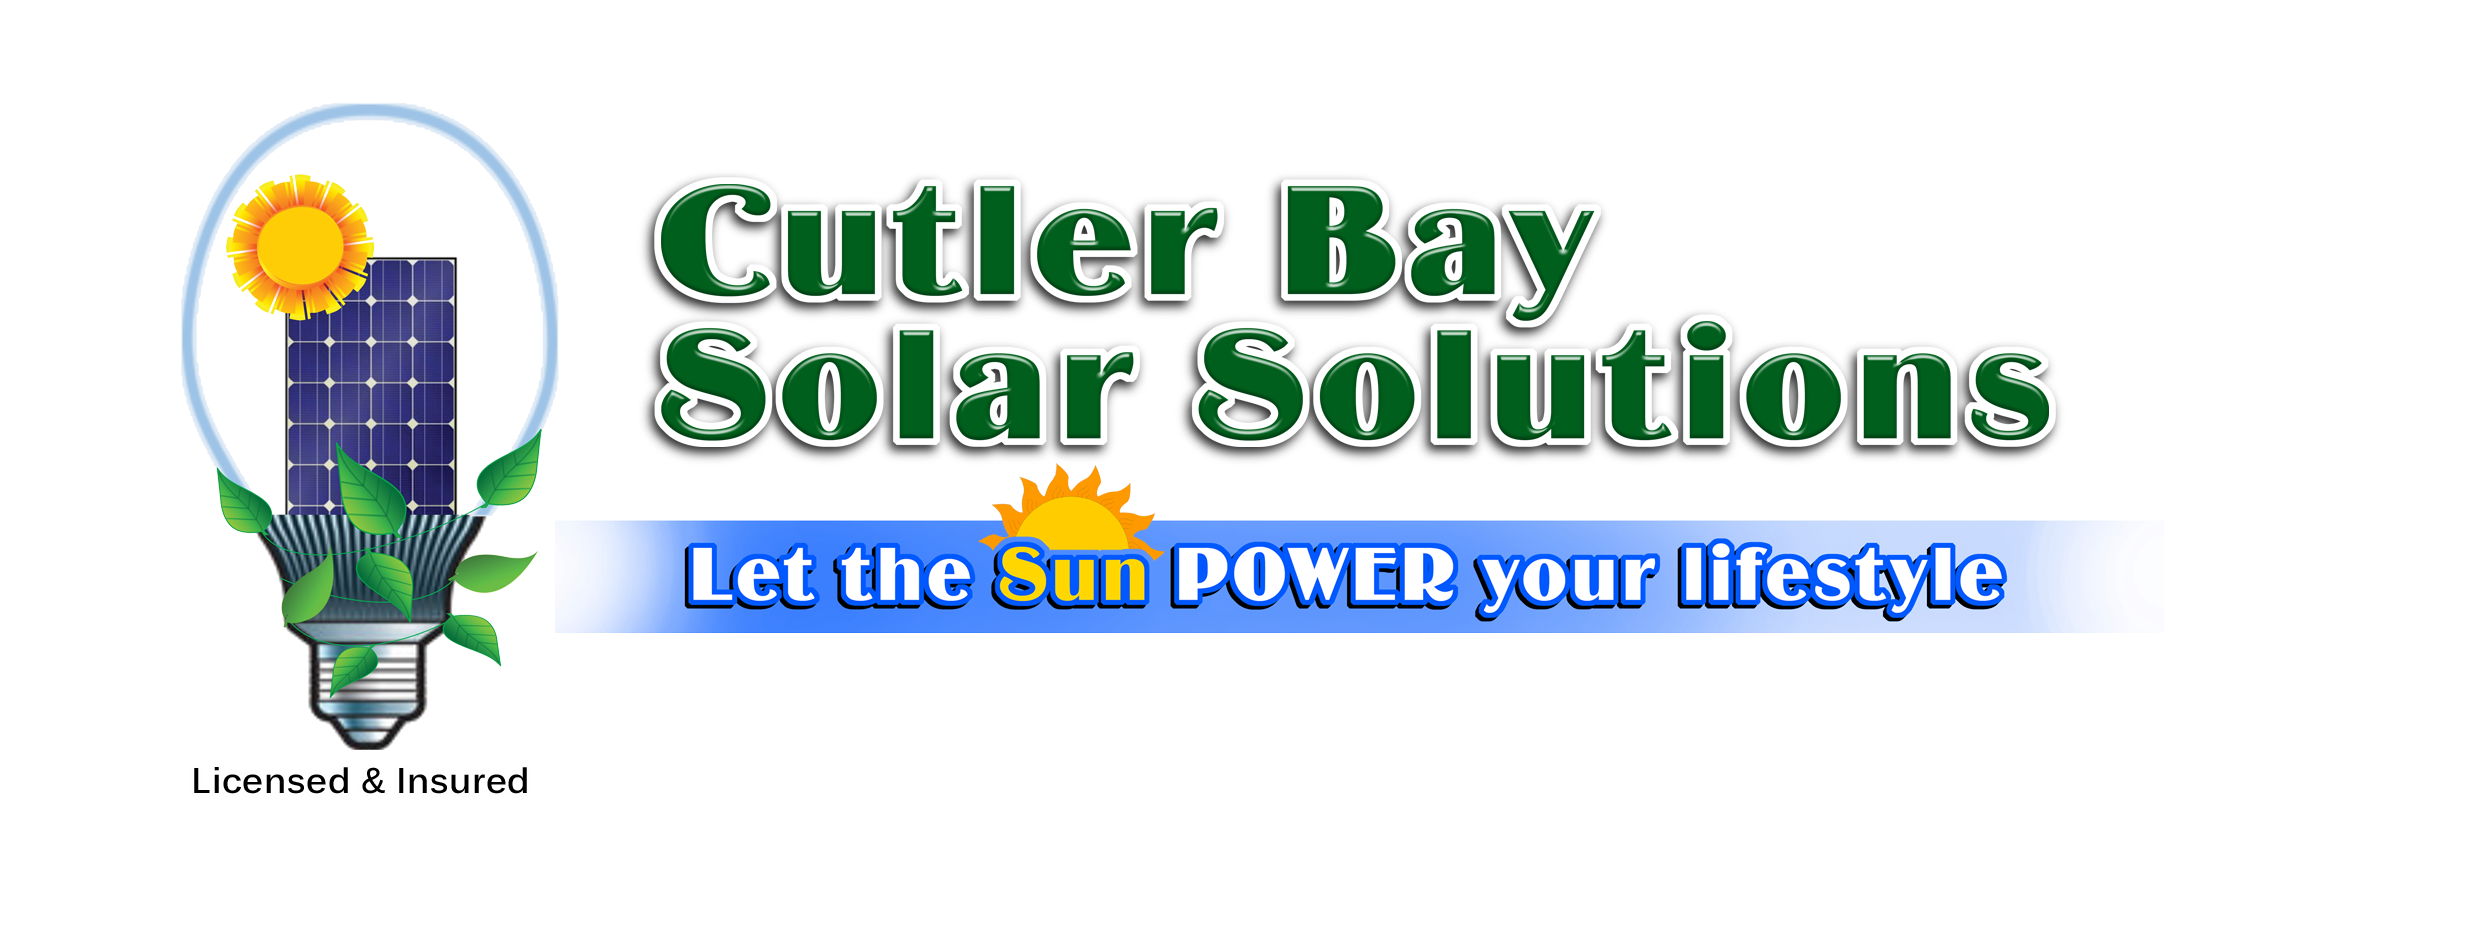 Cutler Bay Solar Solutions Logo